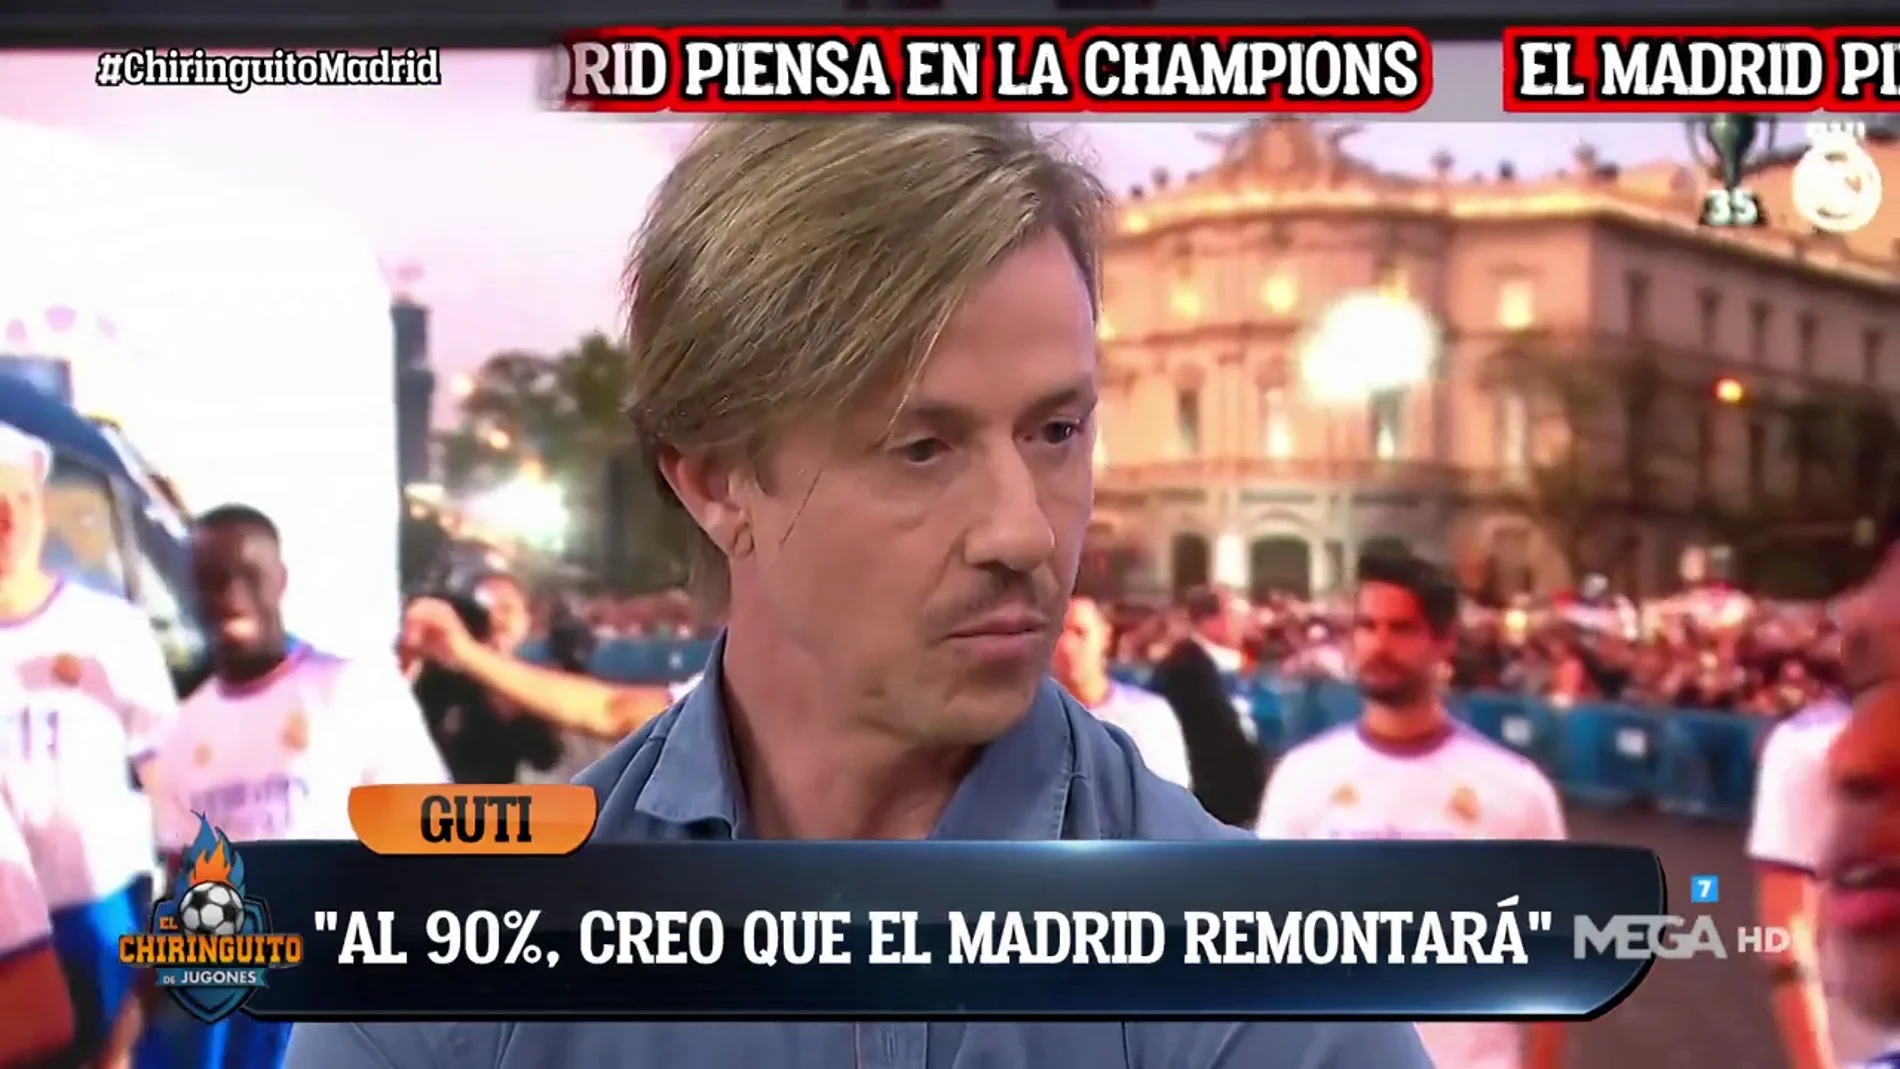 Guti: "Creo que el Madrid remontará al 90%"